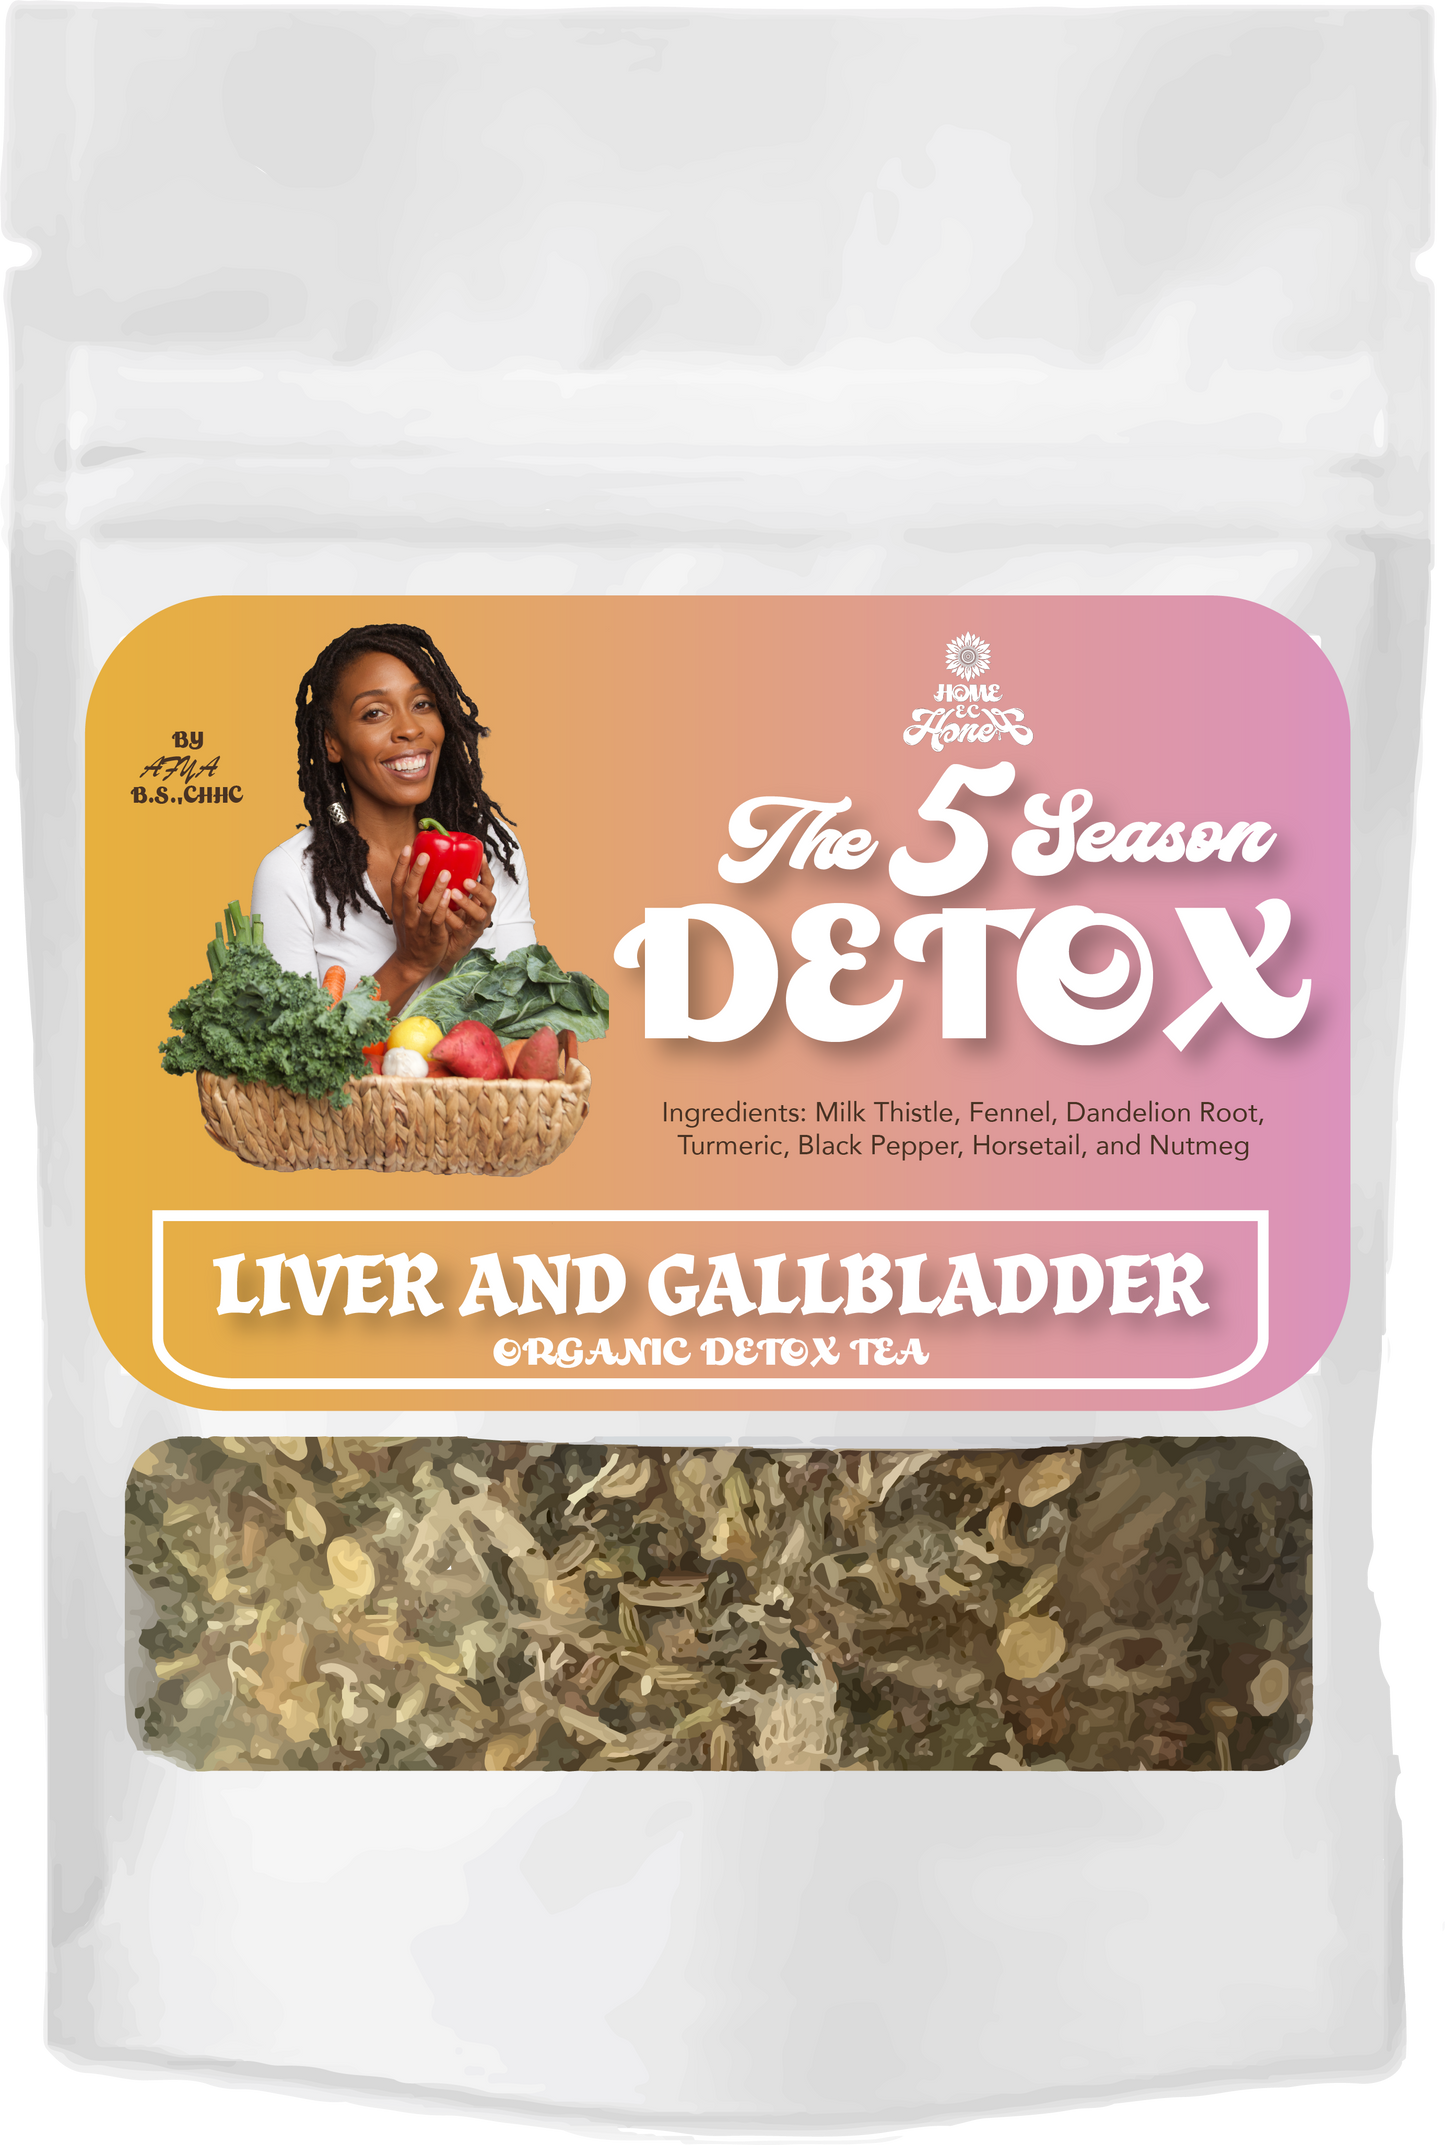 Liver/Gallbladder Detox Herbal Mix